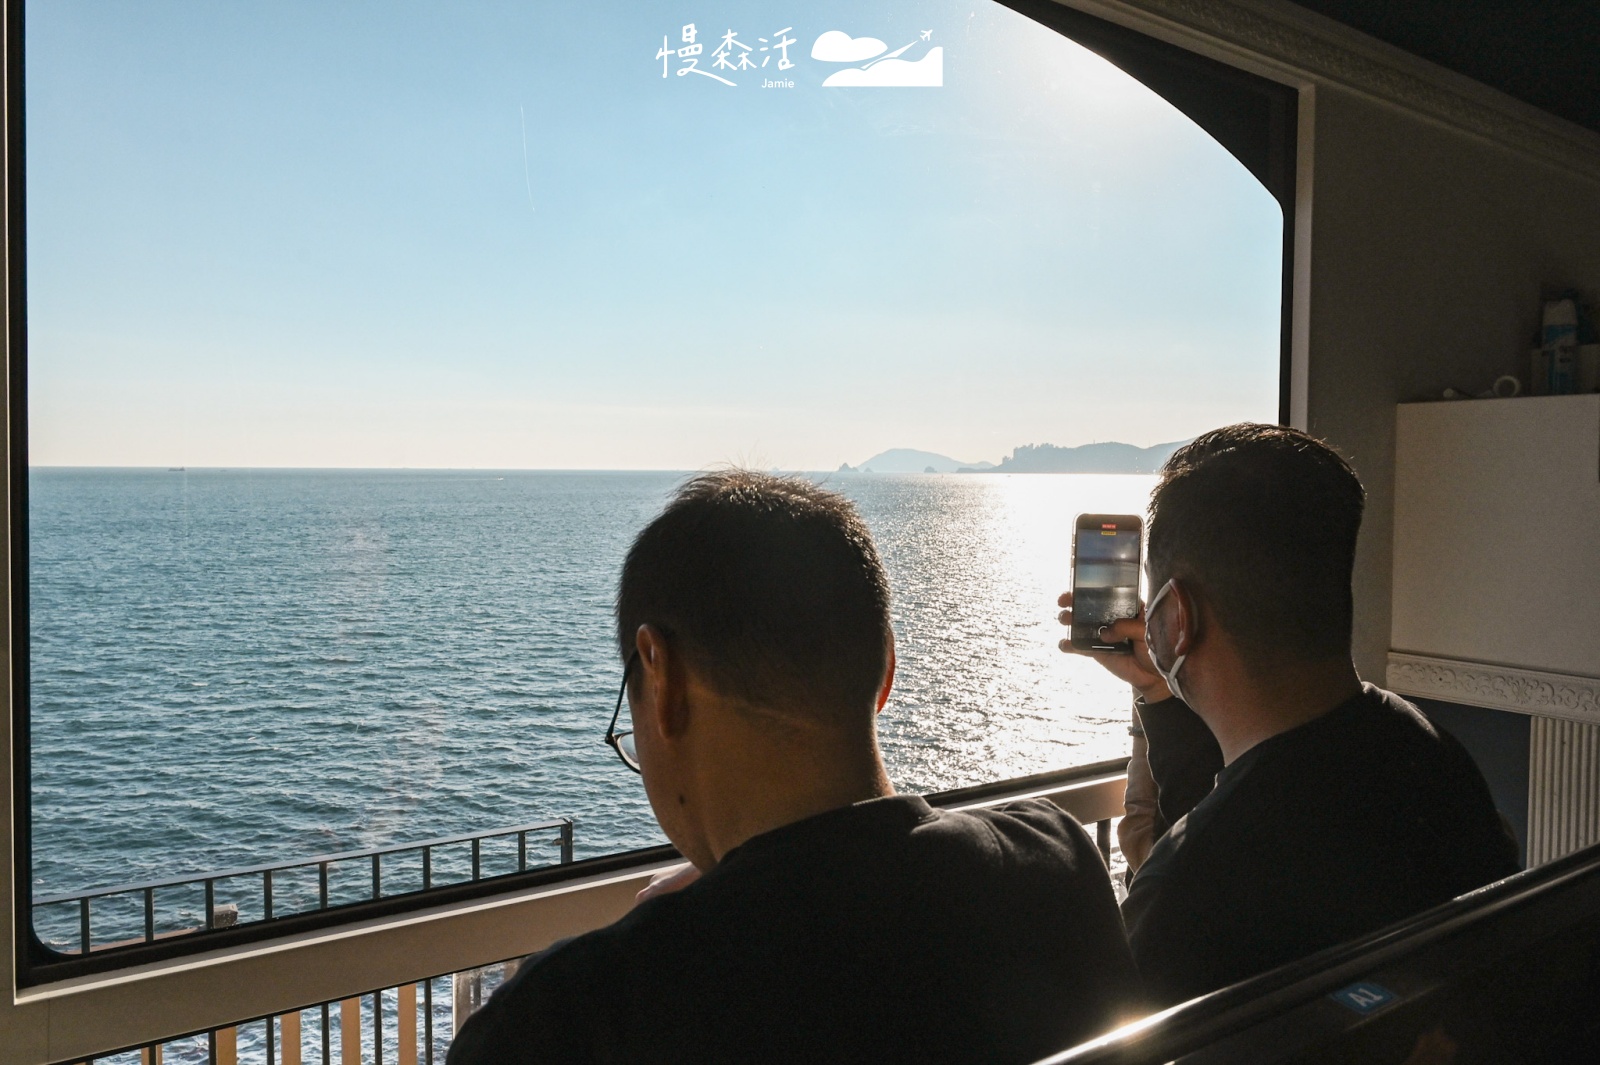 韓國釜山 海雲台藍線公園Blueline Park 濱海列車內部風景